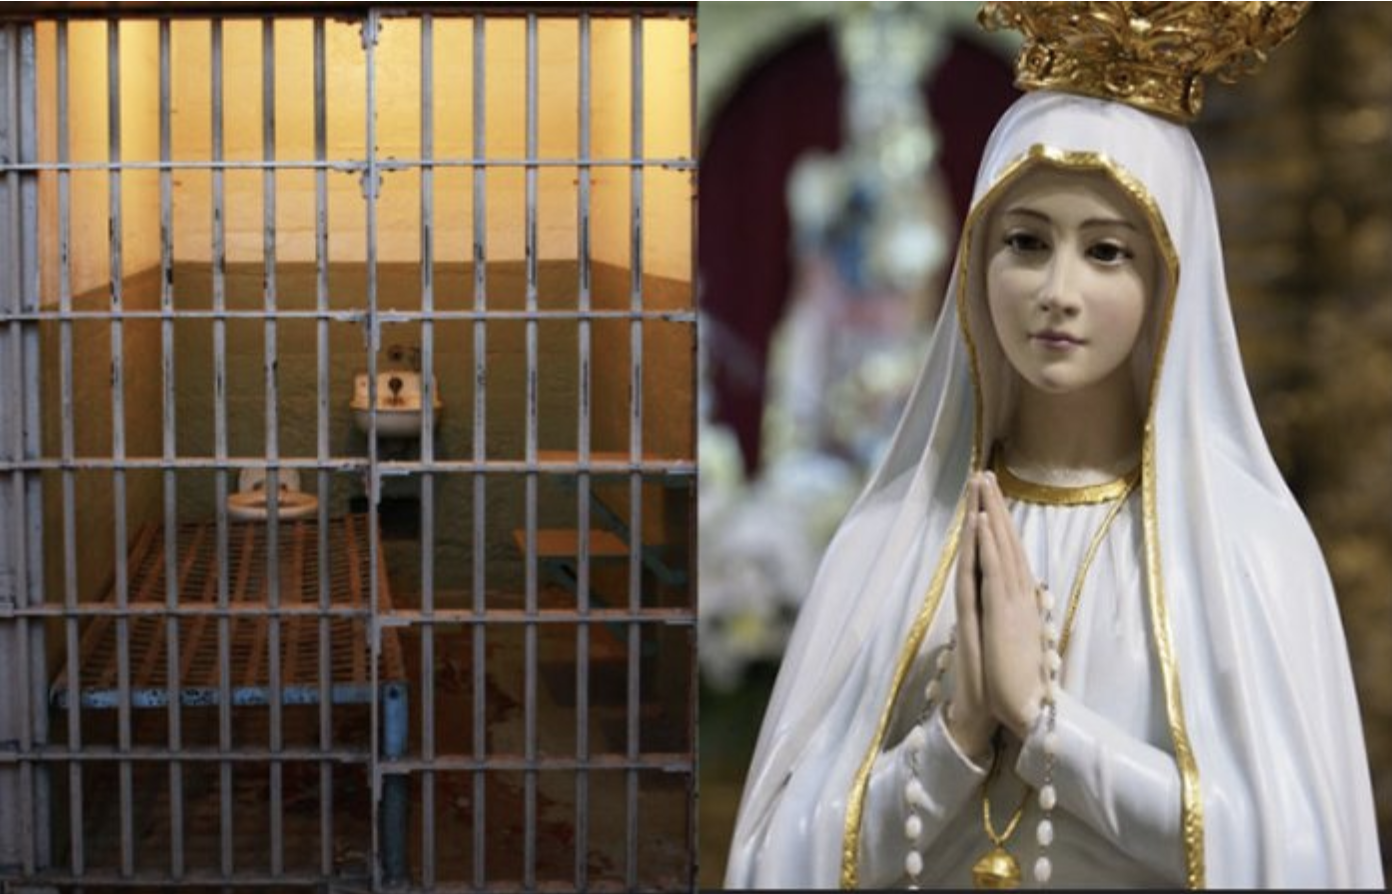 La Madonna di Fatima visita una prigione in Argentina. La reazione virale dei detenuti